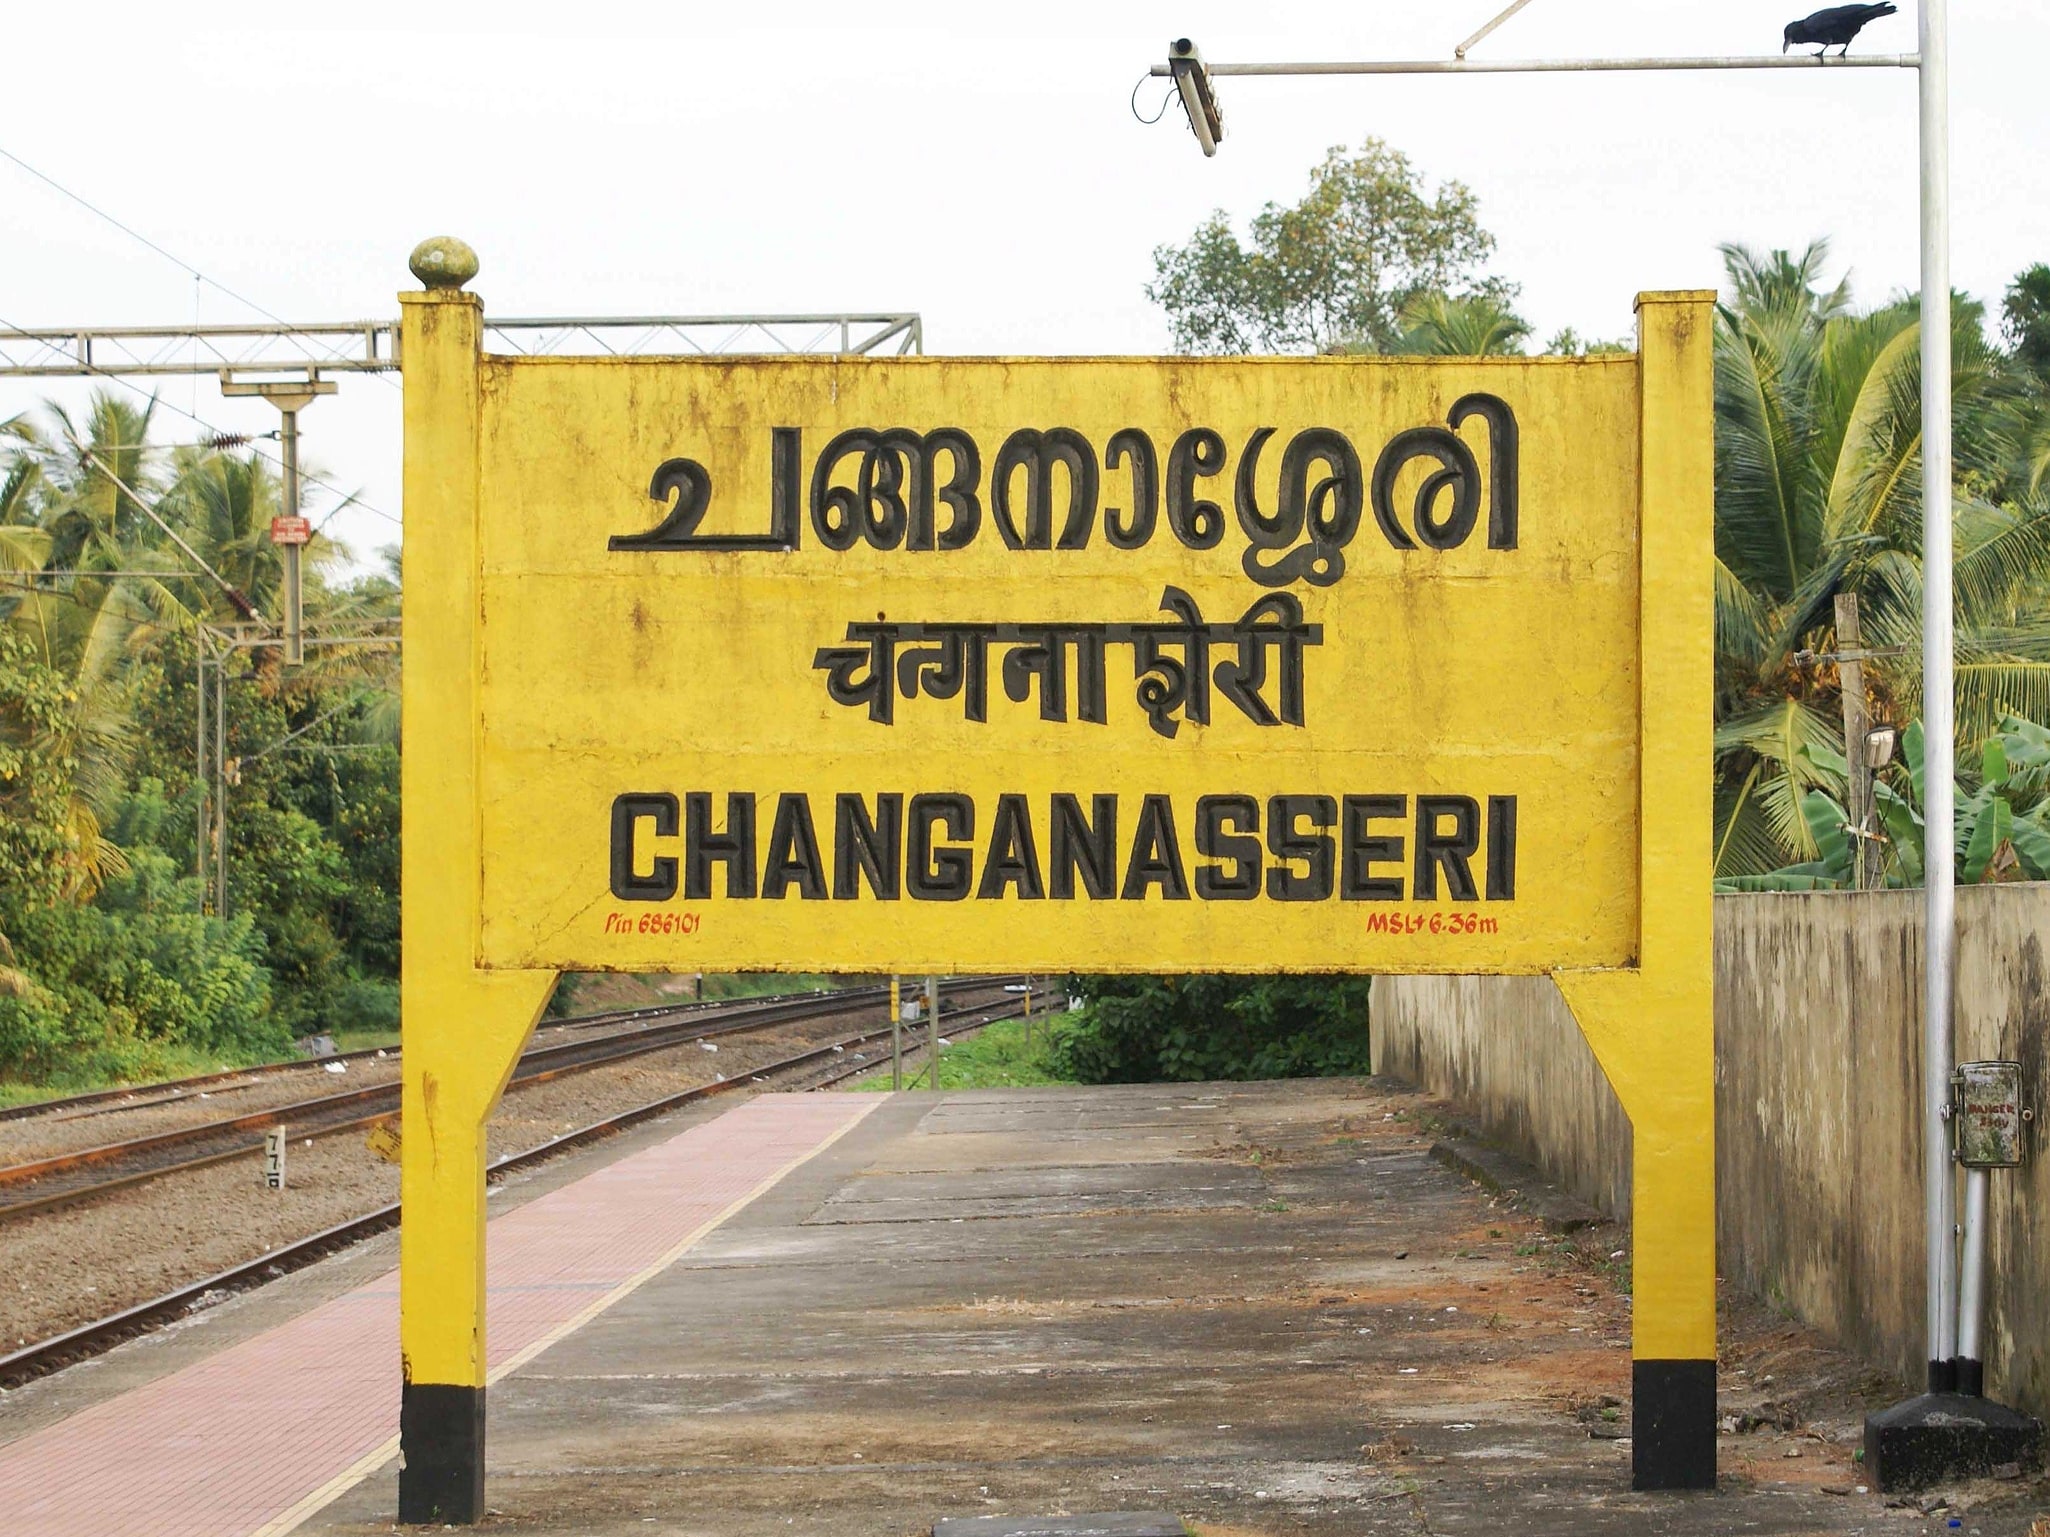 Changanassery, India